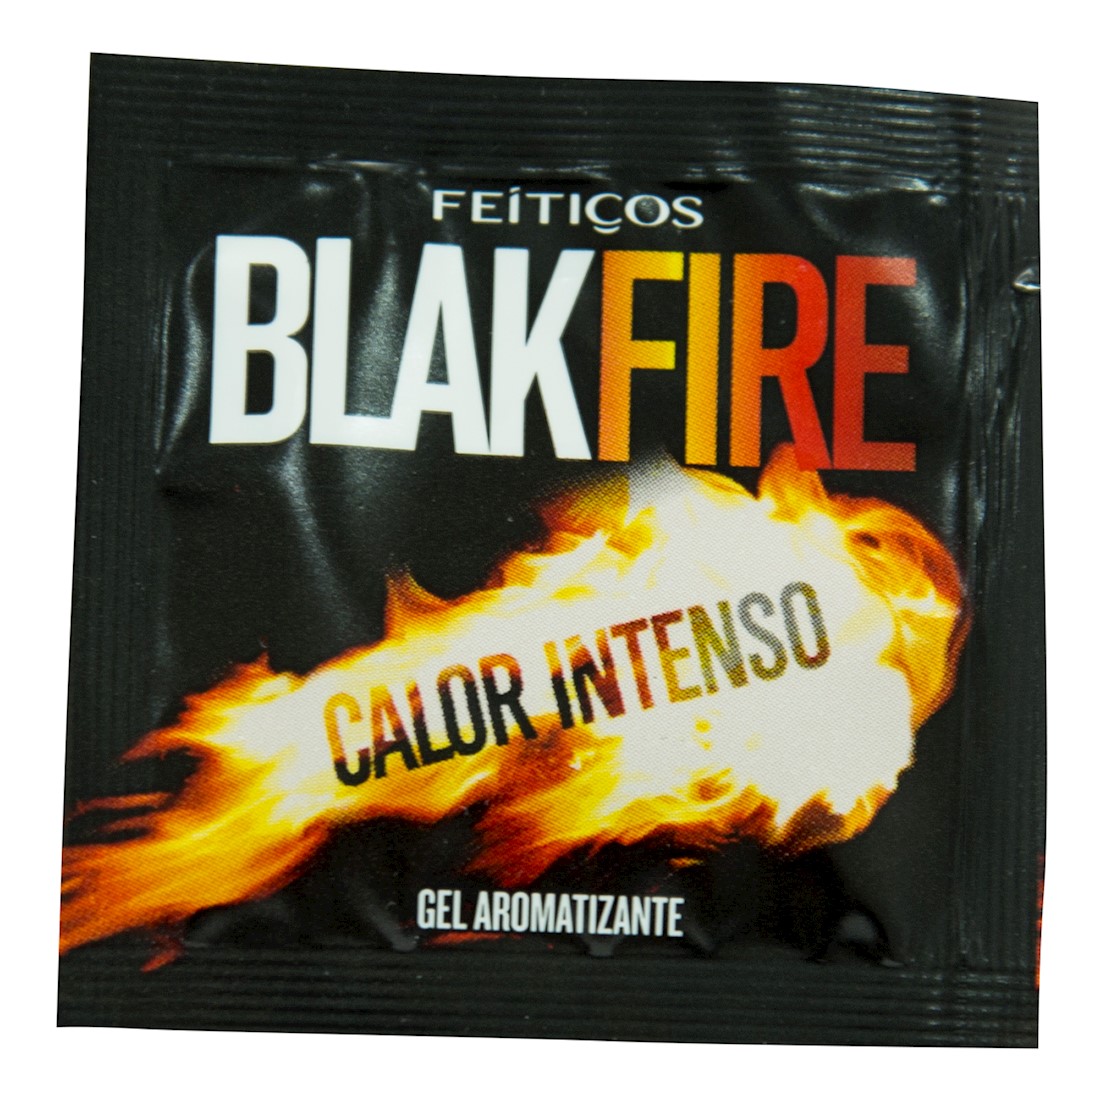 Sachê Black Fire Calor intenso gel comestível 5g Feitiços - Sex shop-0